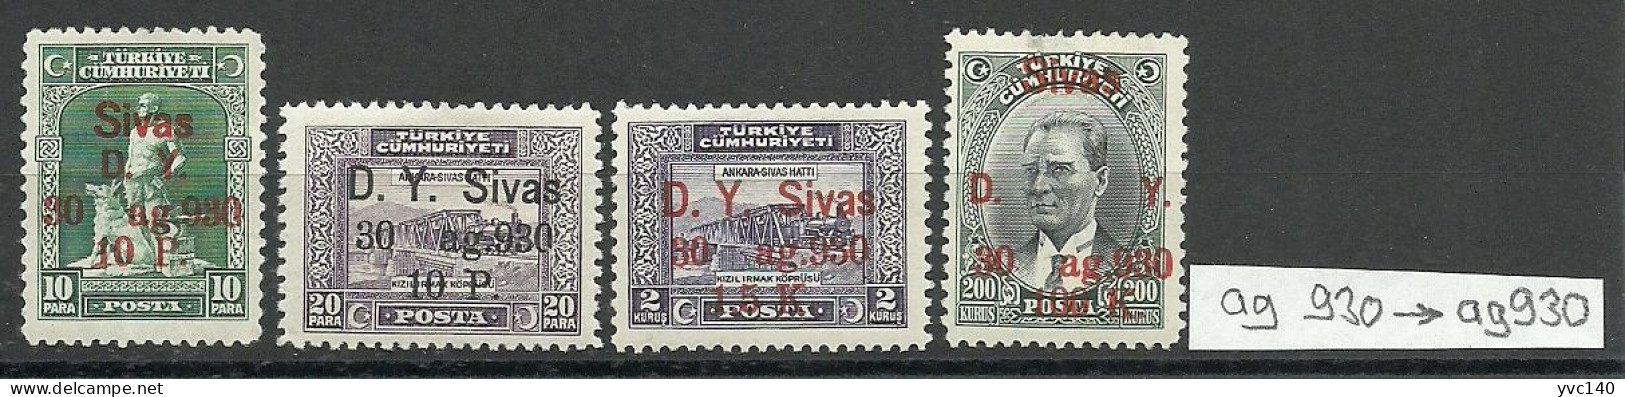 Turkey; 1930 Ankara-Sivas Railway Stamps "ag930 ERROR" MH* RRR - Ungebraucht